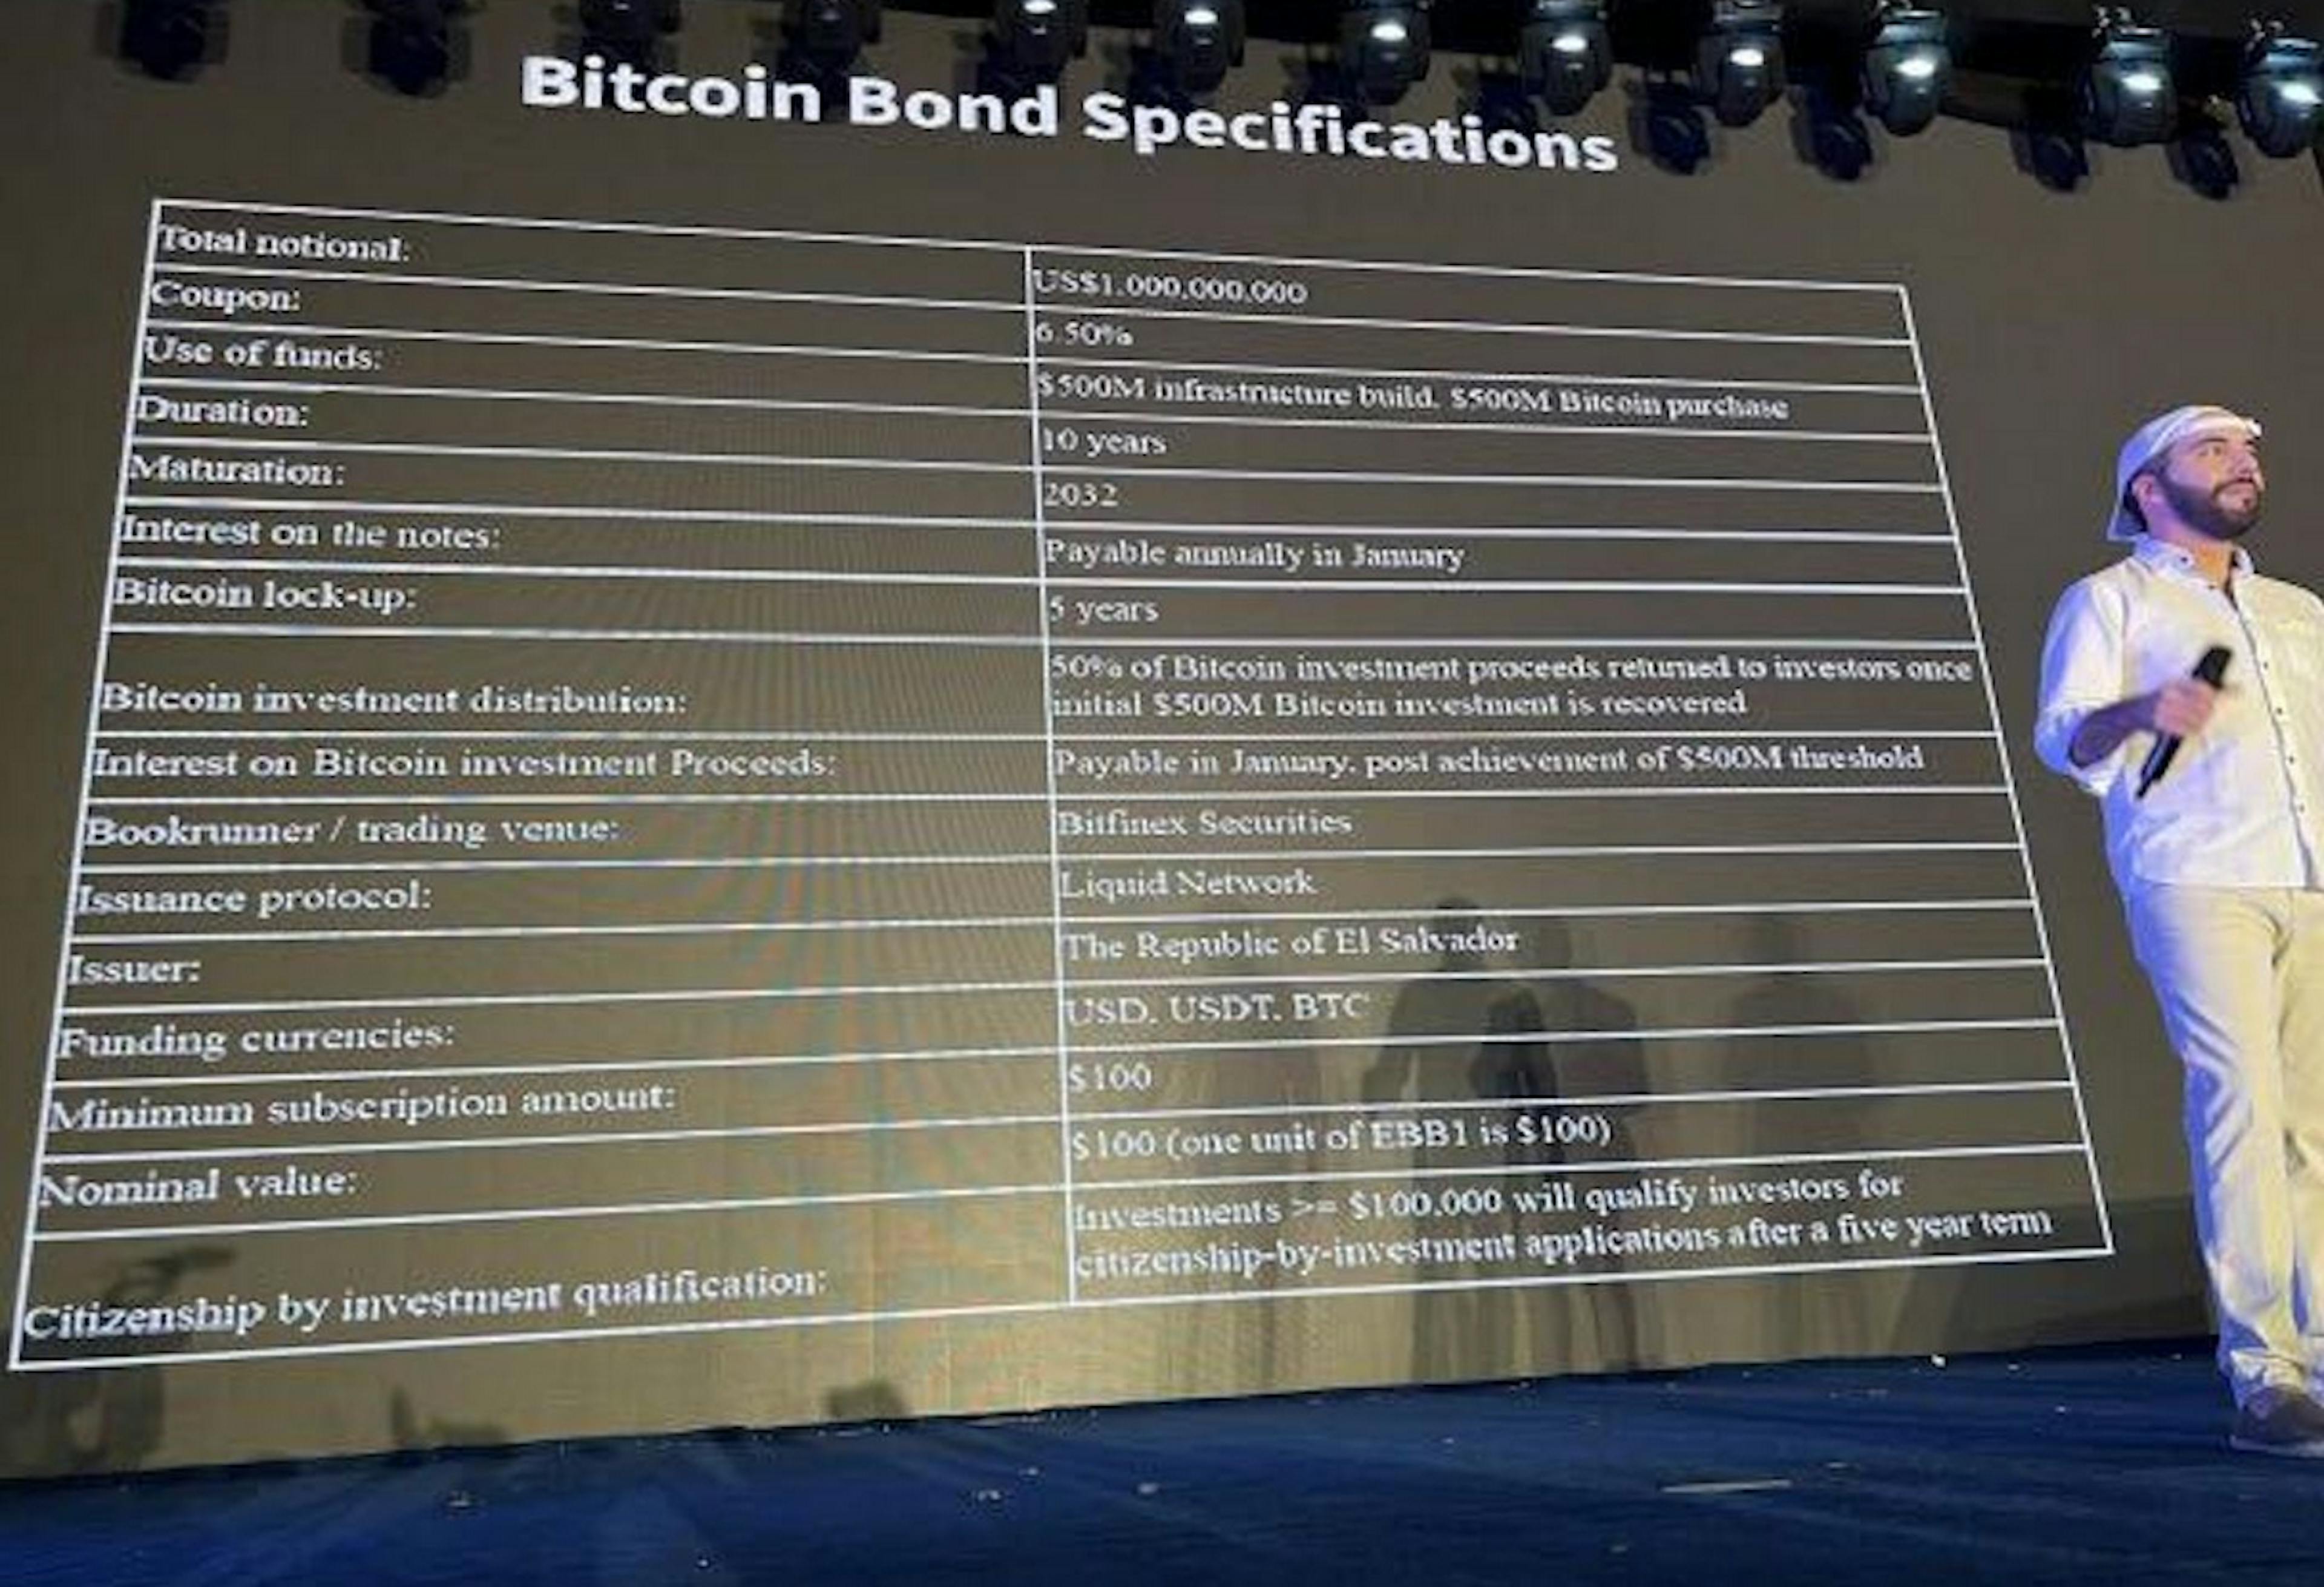 Bildquelle: https://www.coindesk.com/markets/2021/11/22/junk-rated-el-salvadors-bitcoin-bonds-look-explosive-think-volcano/